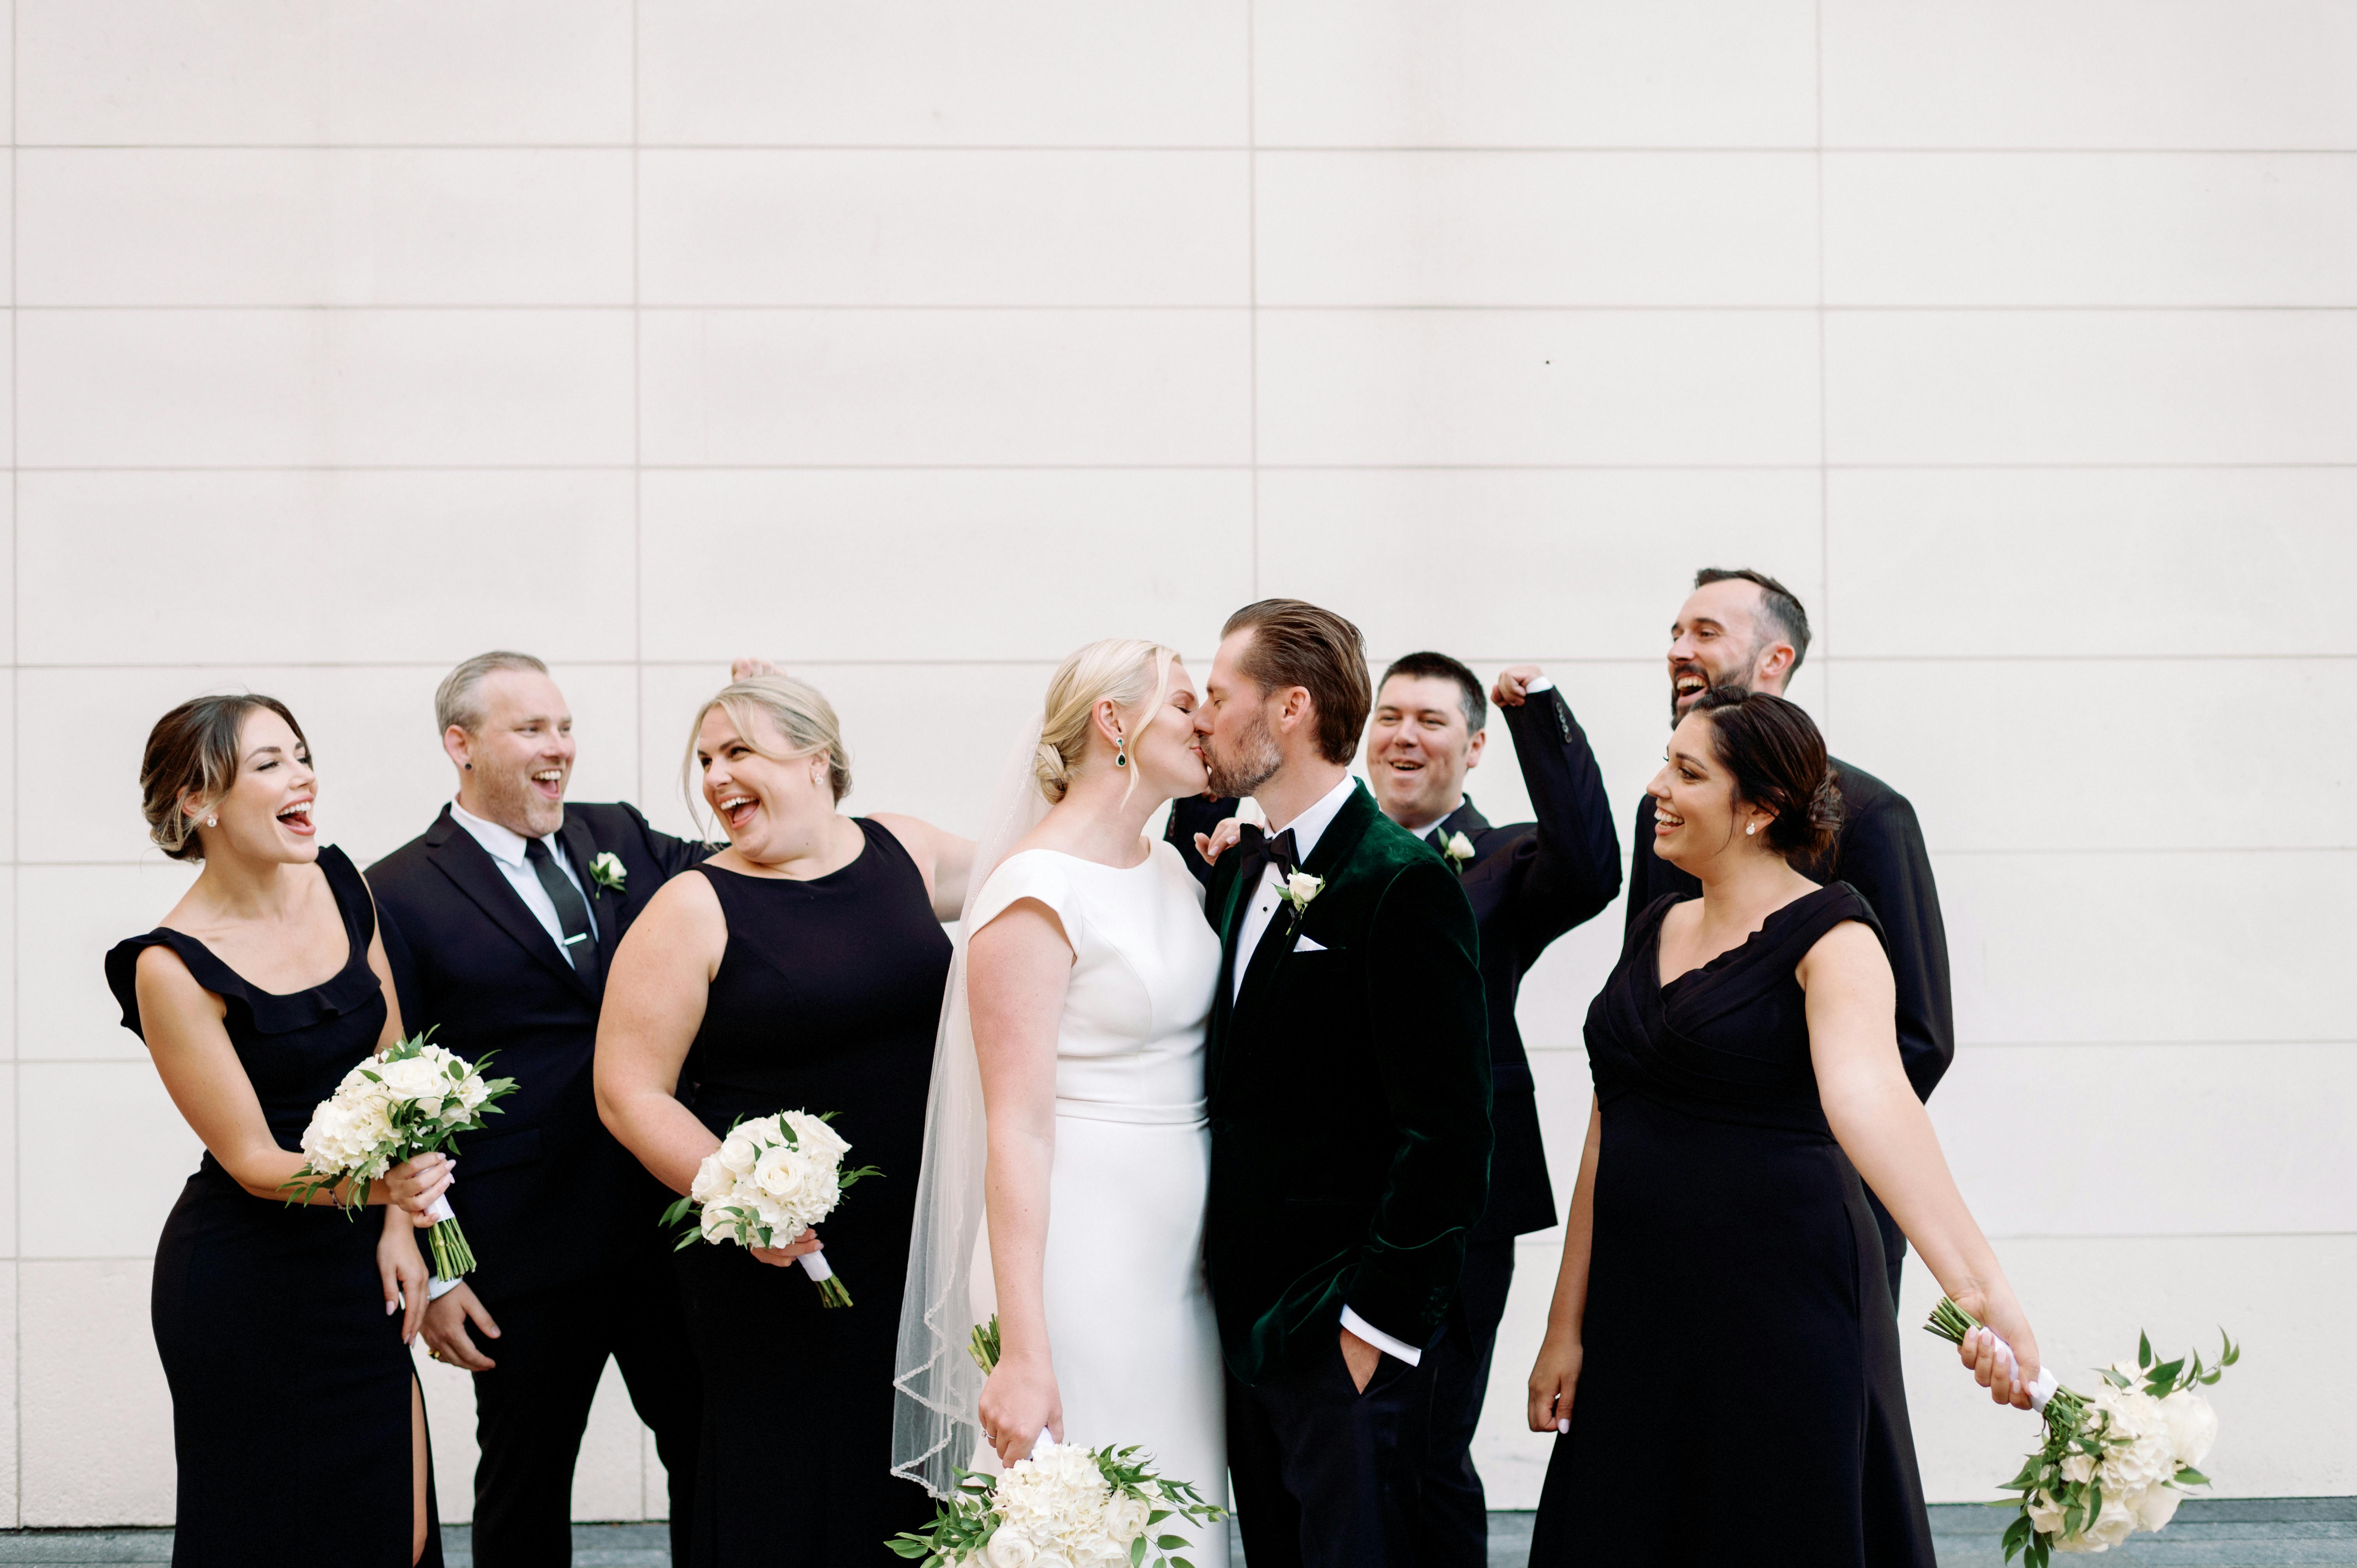 Les mariés s'embrassent devant les invités | Source : Pexels